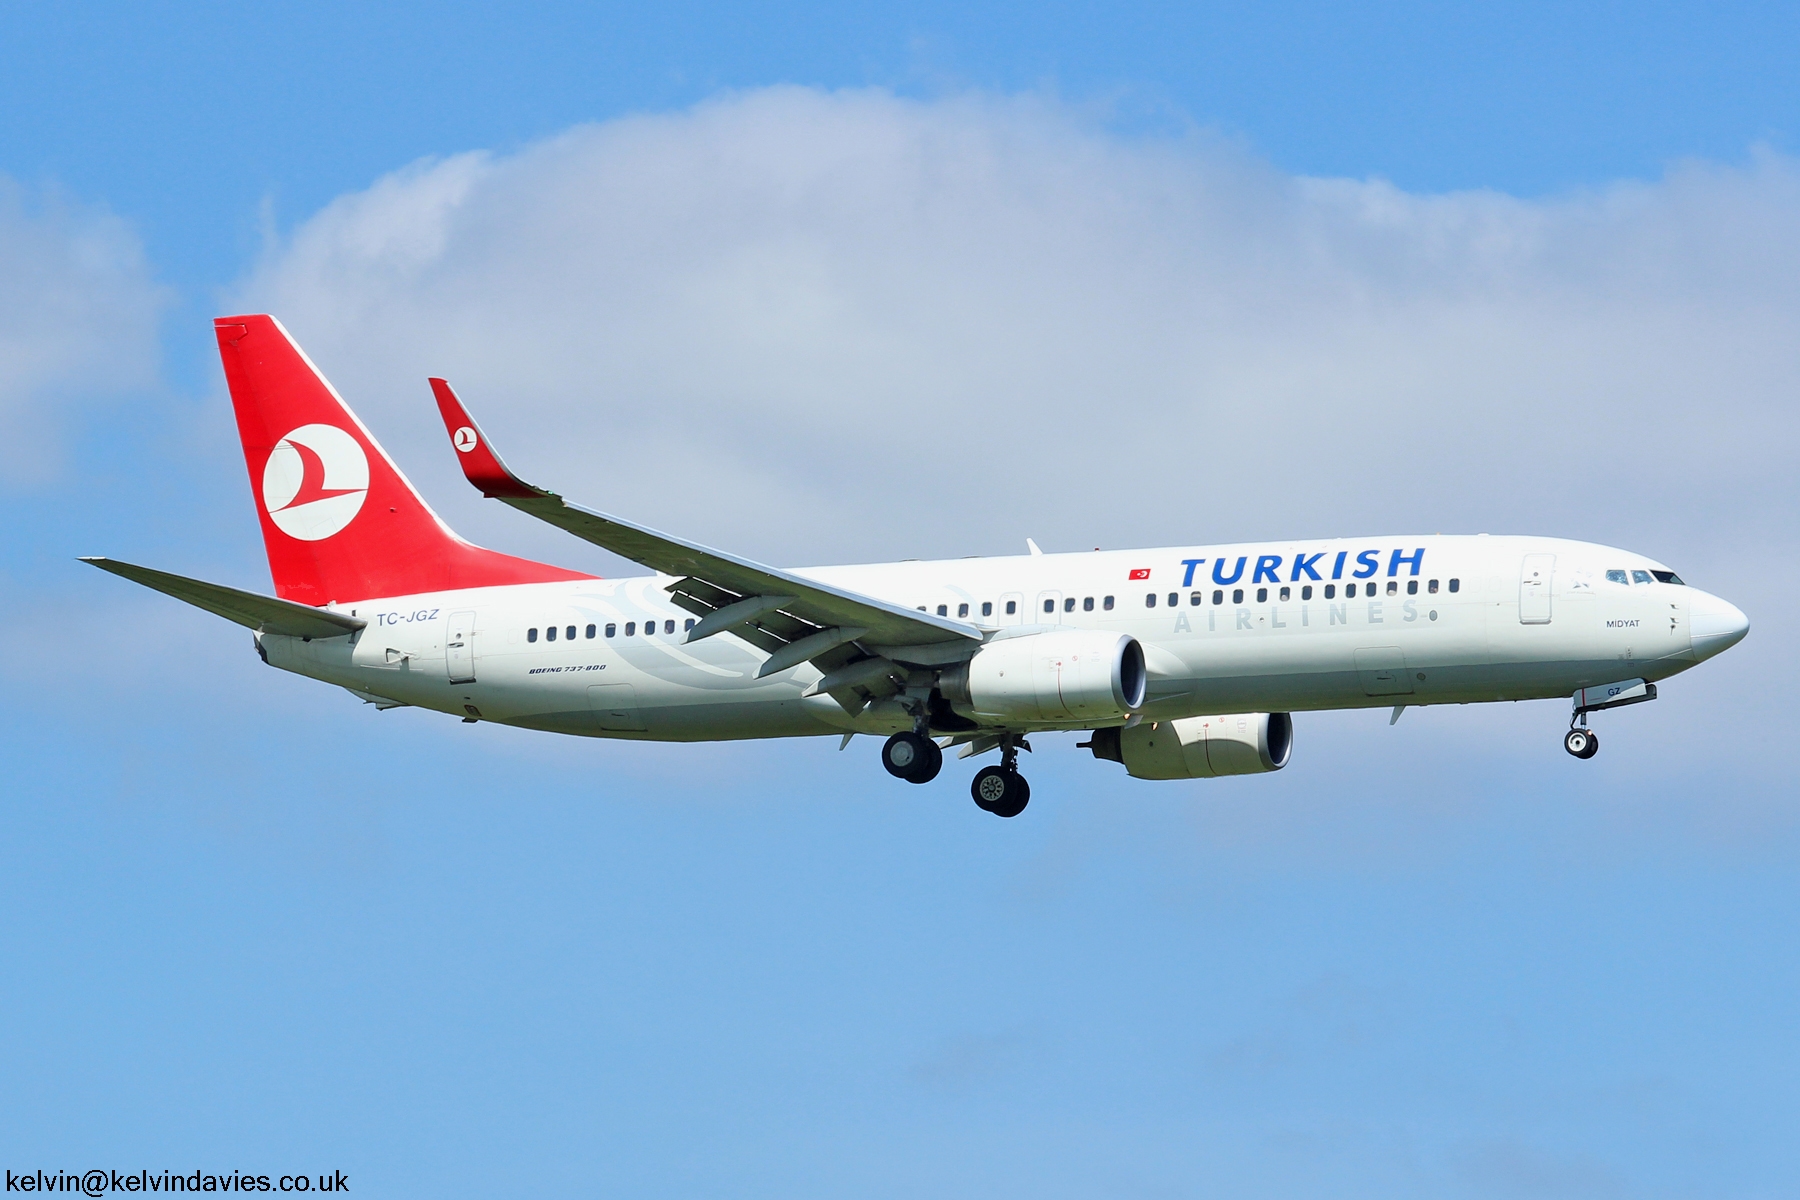 Turkish Airlines 737 TC-JGZ